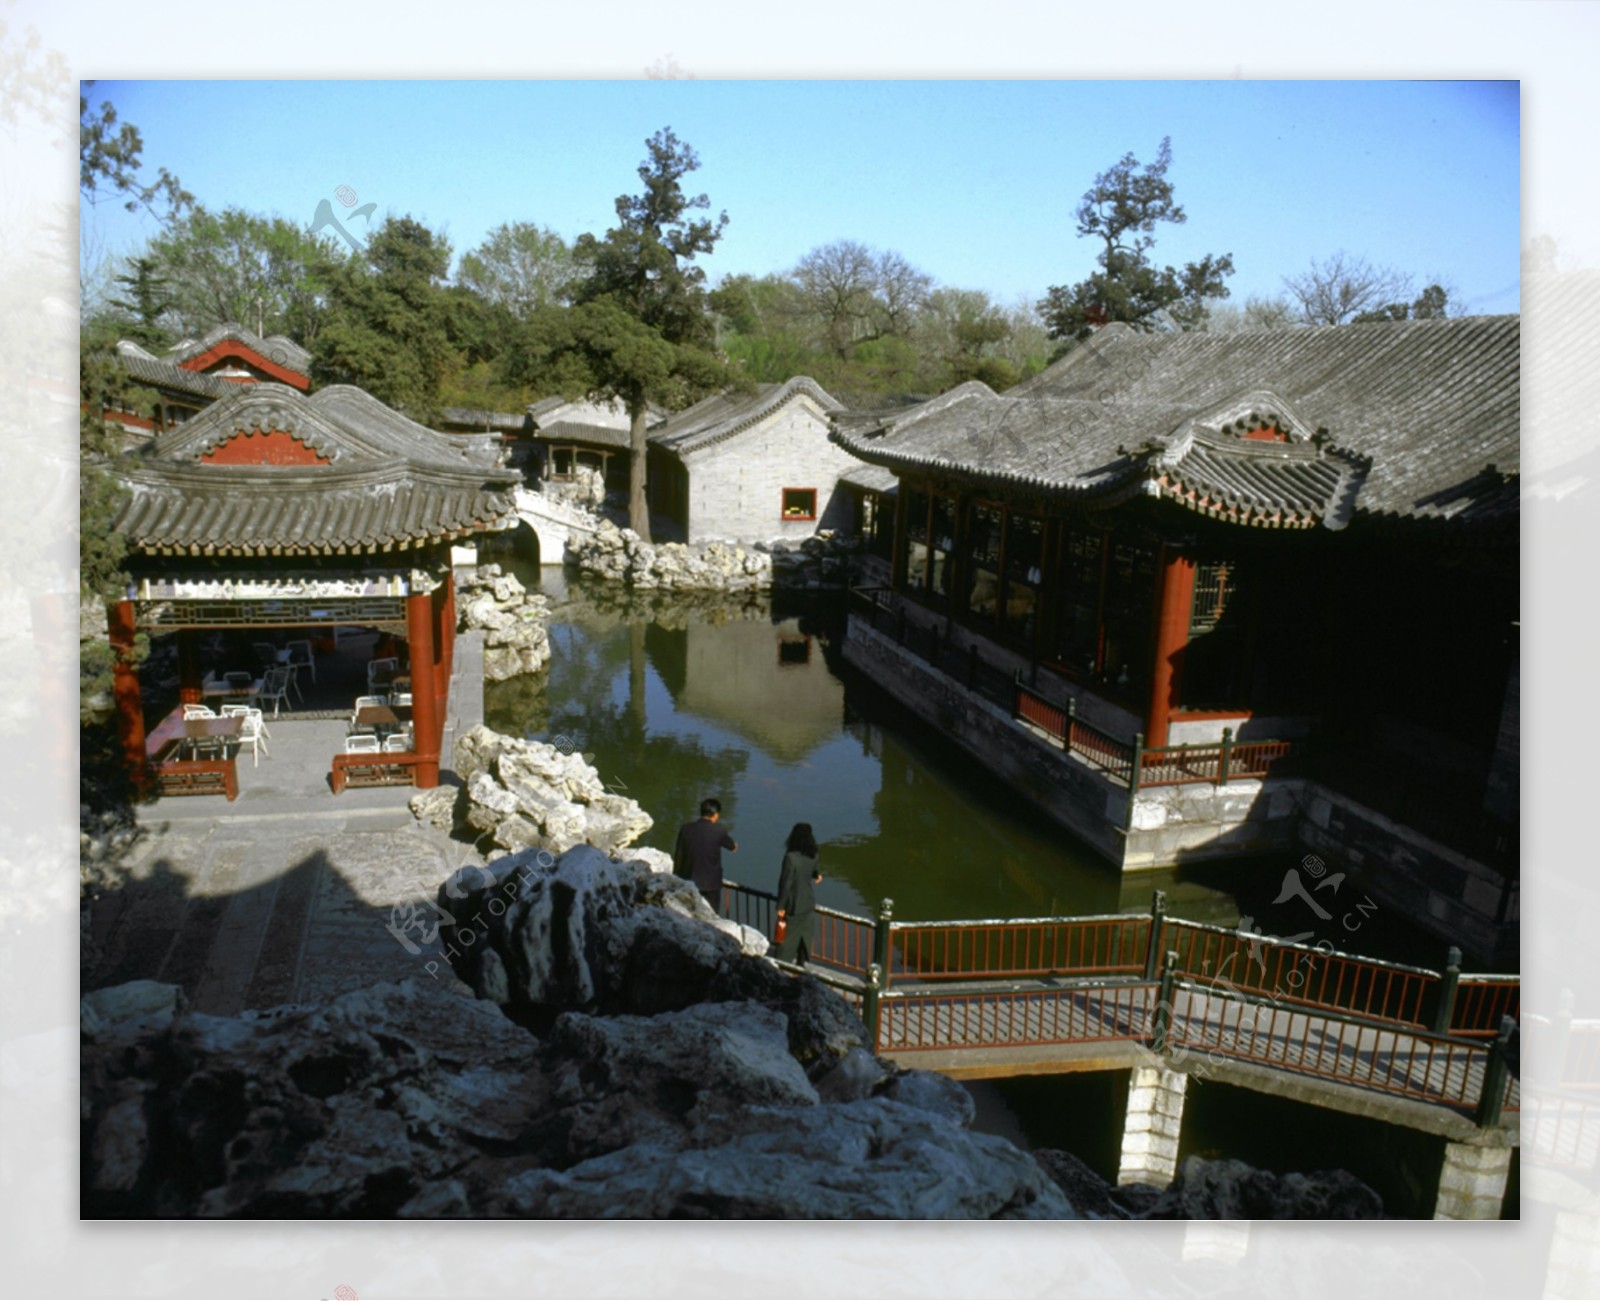 北京皇家园林设计明清建筑颐和园小桥亭子